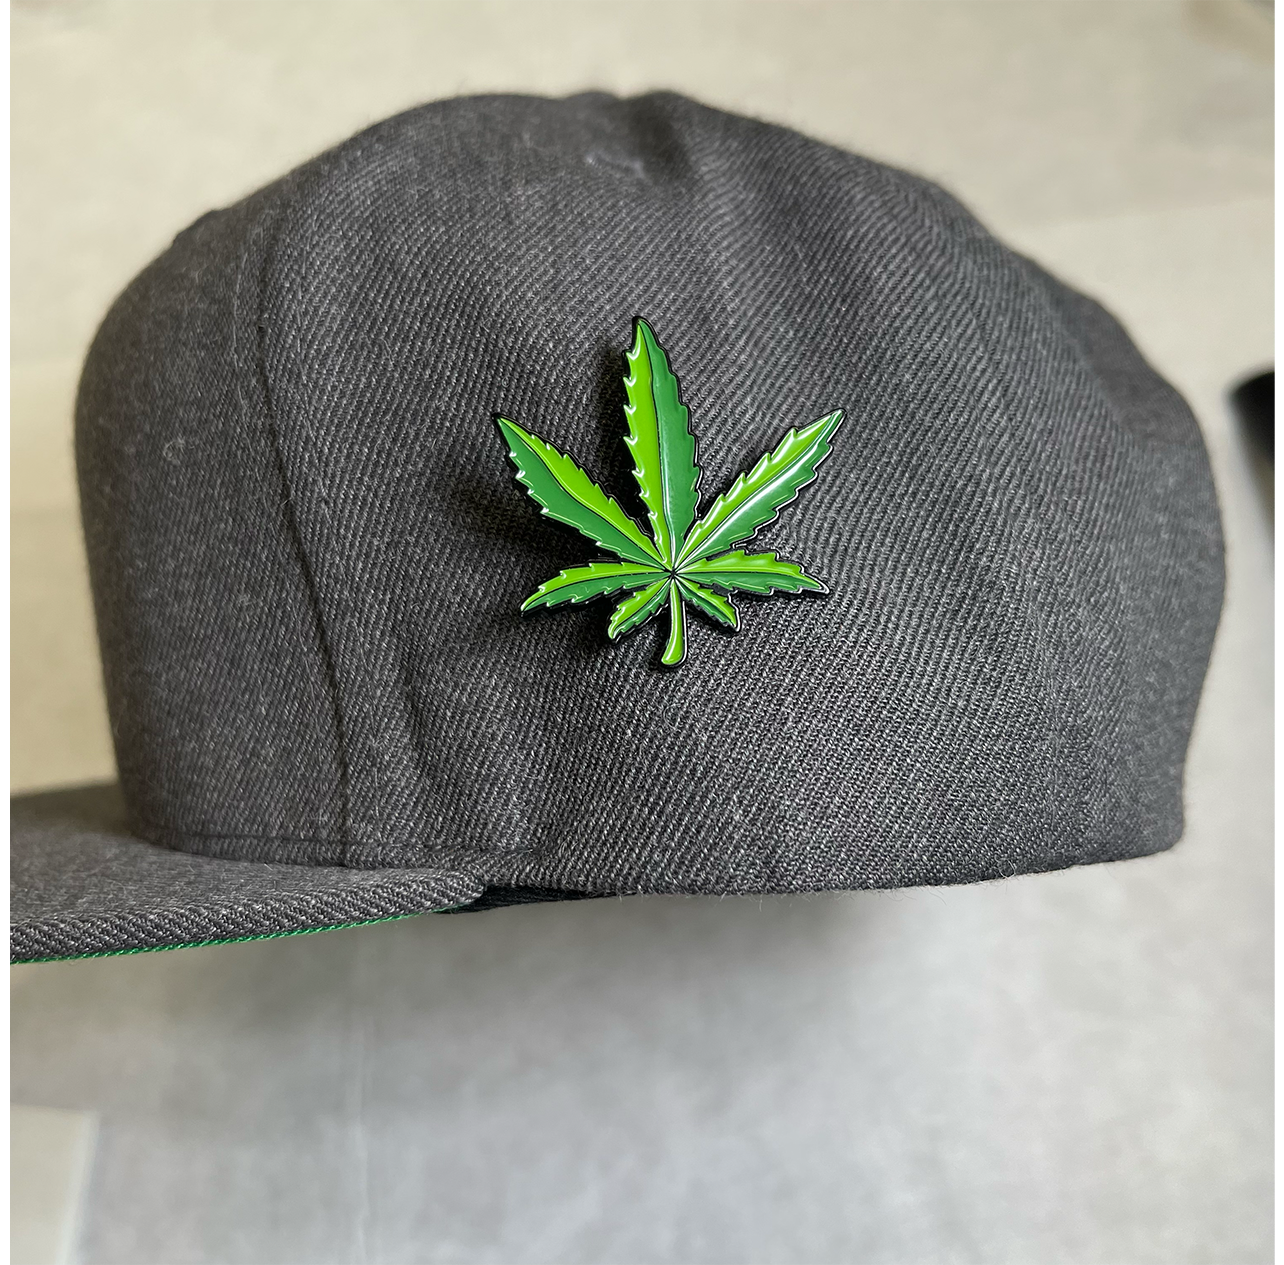 Marijuana Pin